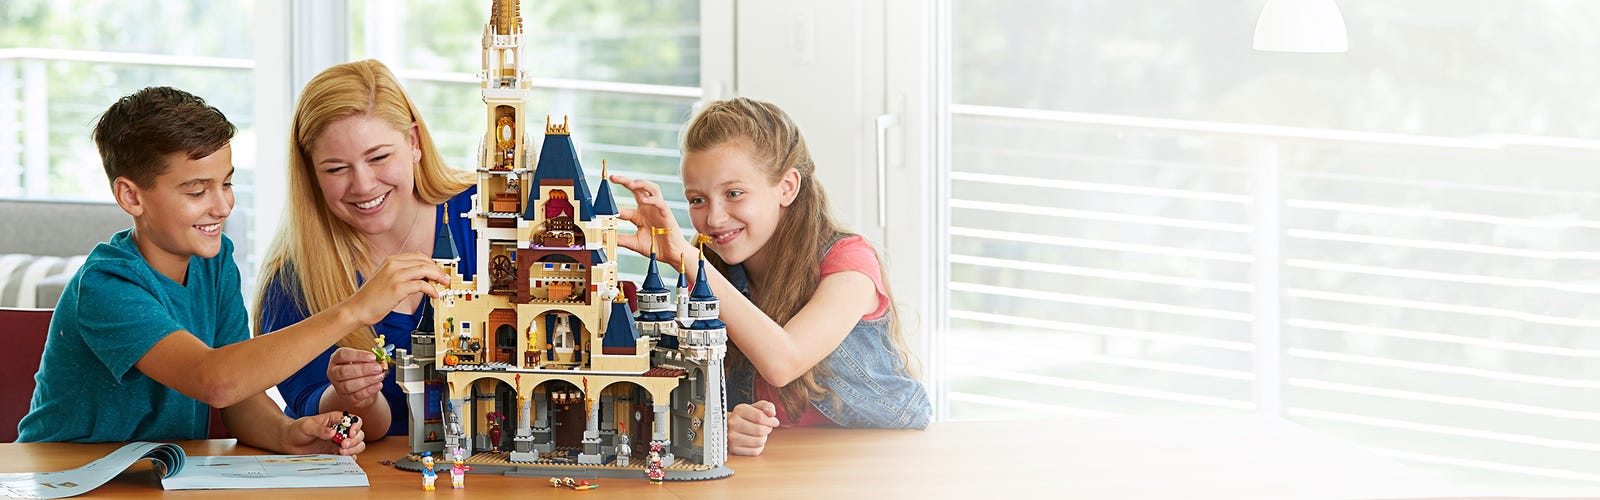 Lego Castello Disney 71040 - Collezionismo In vendita a Milano